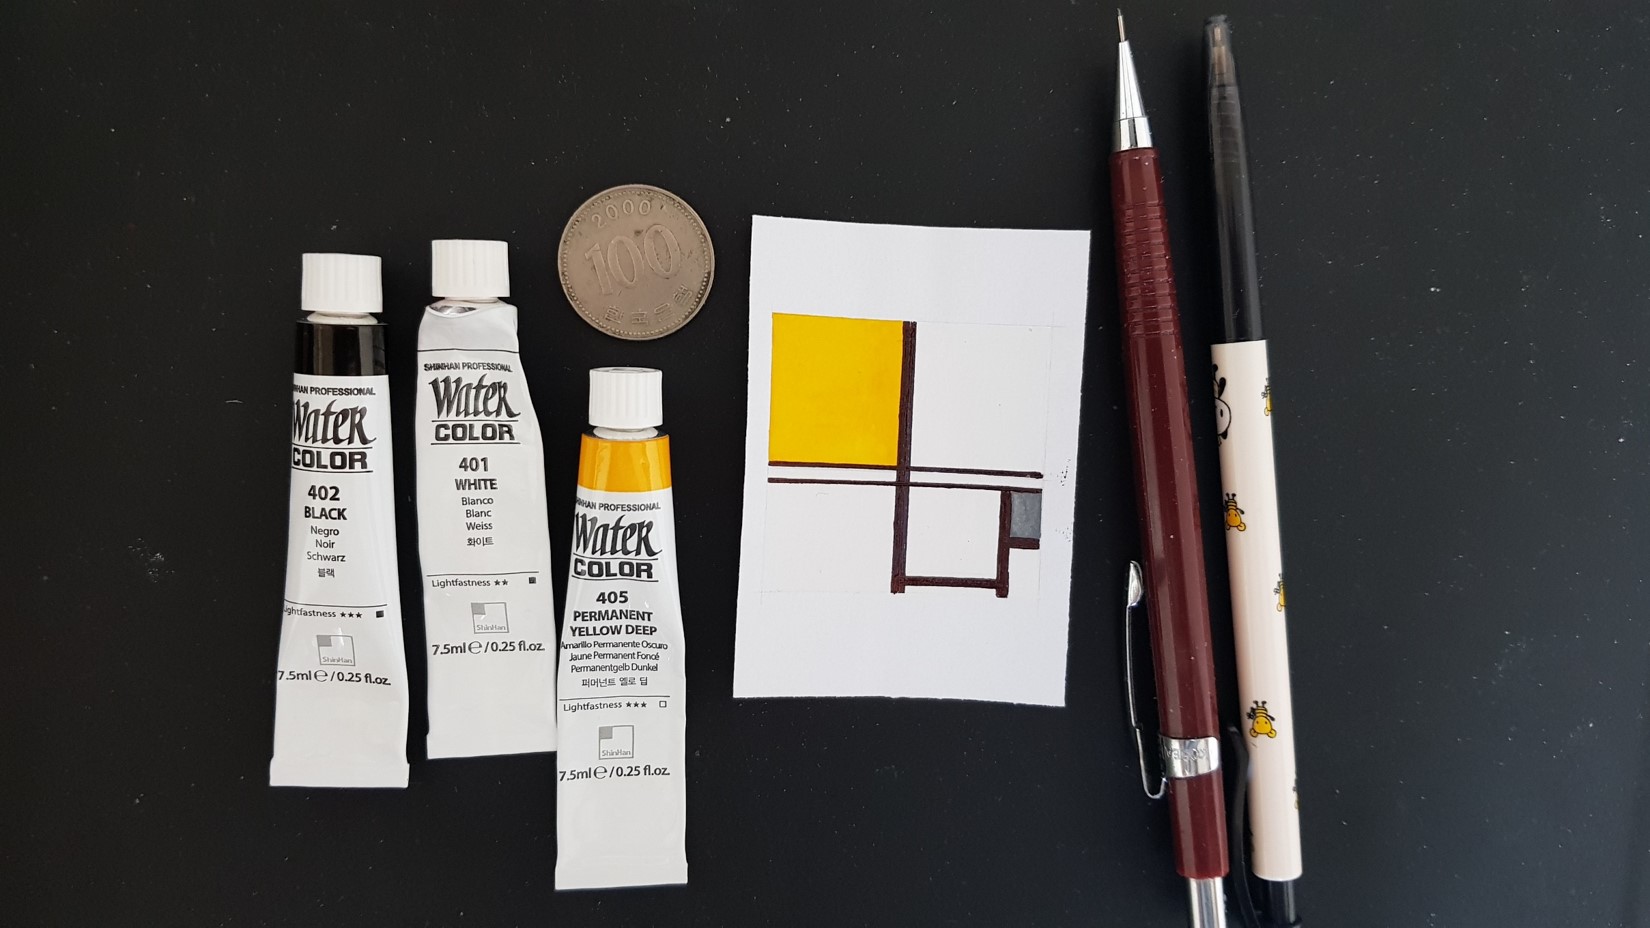 오늘은 샤프와 지우개로 스케치한 후, 검정 볼펜과 노랑·검정·흰색 수채 물감으로 채색할 생각입니다. 그럼 시작해보죠.